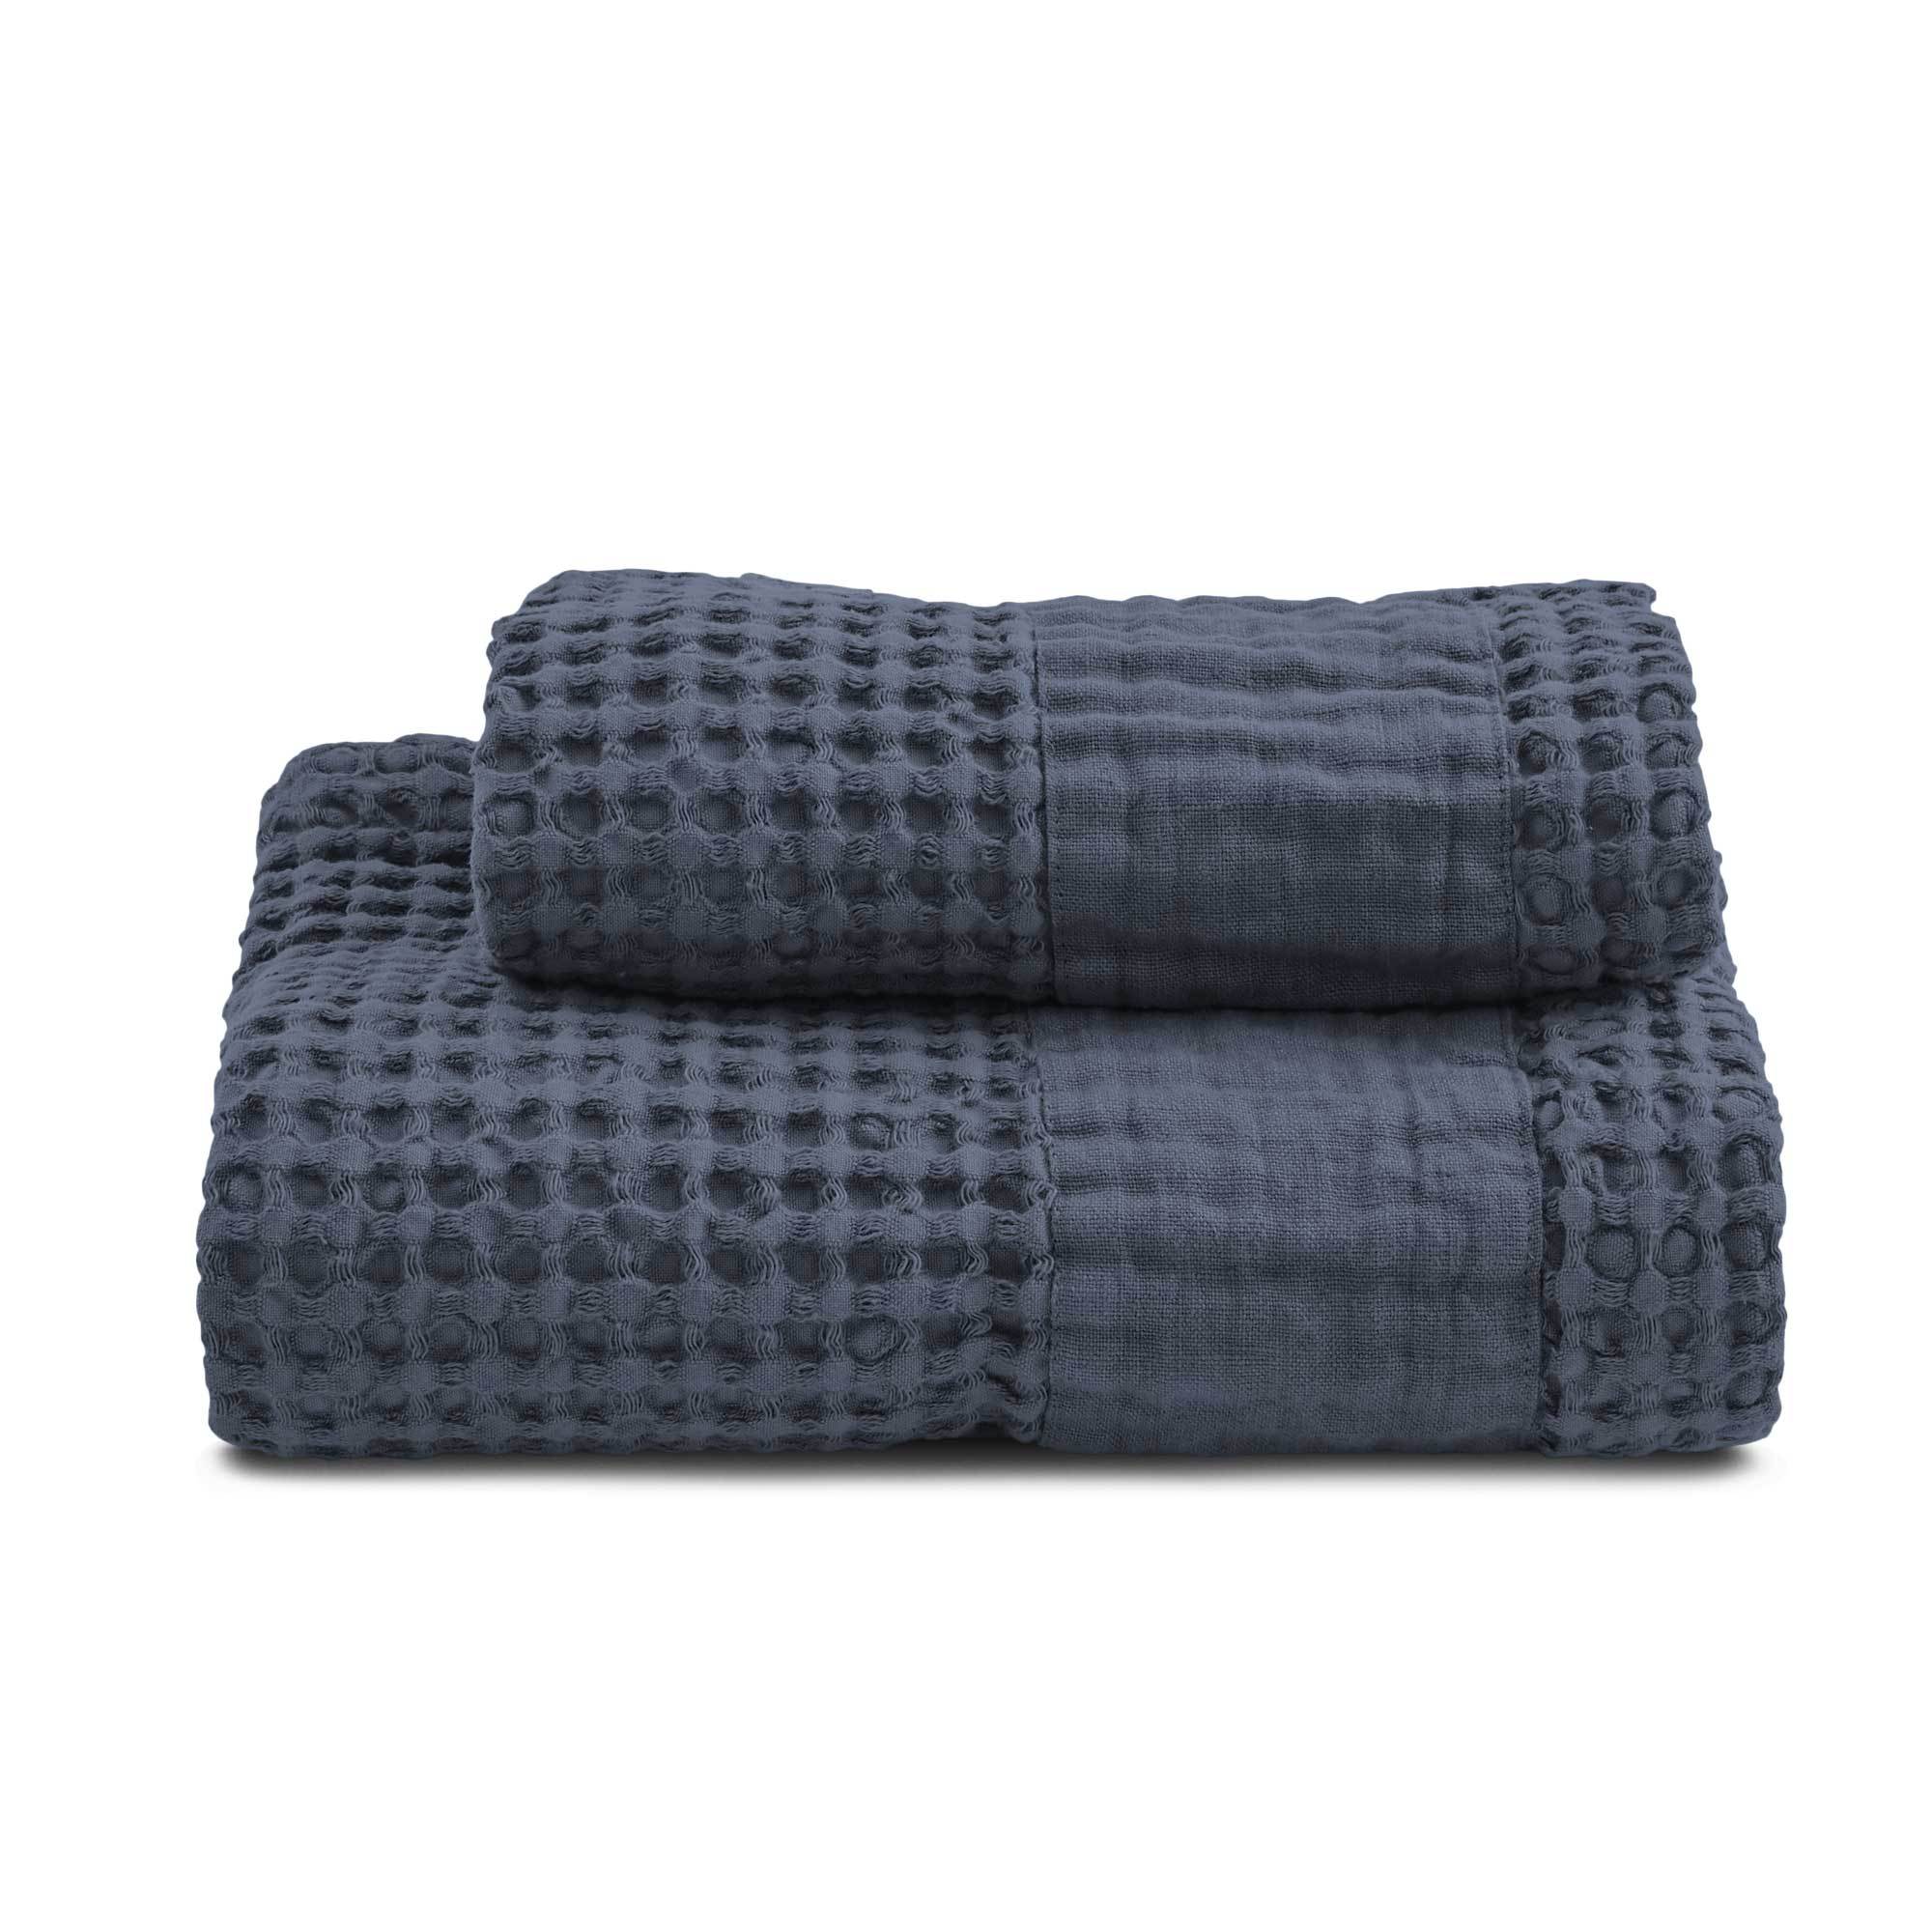 Set di tre asciugamani piccoli blu Camomilla Milano